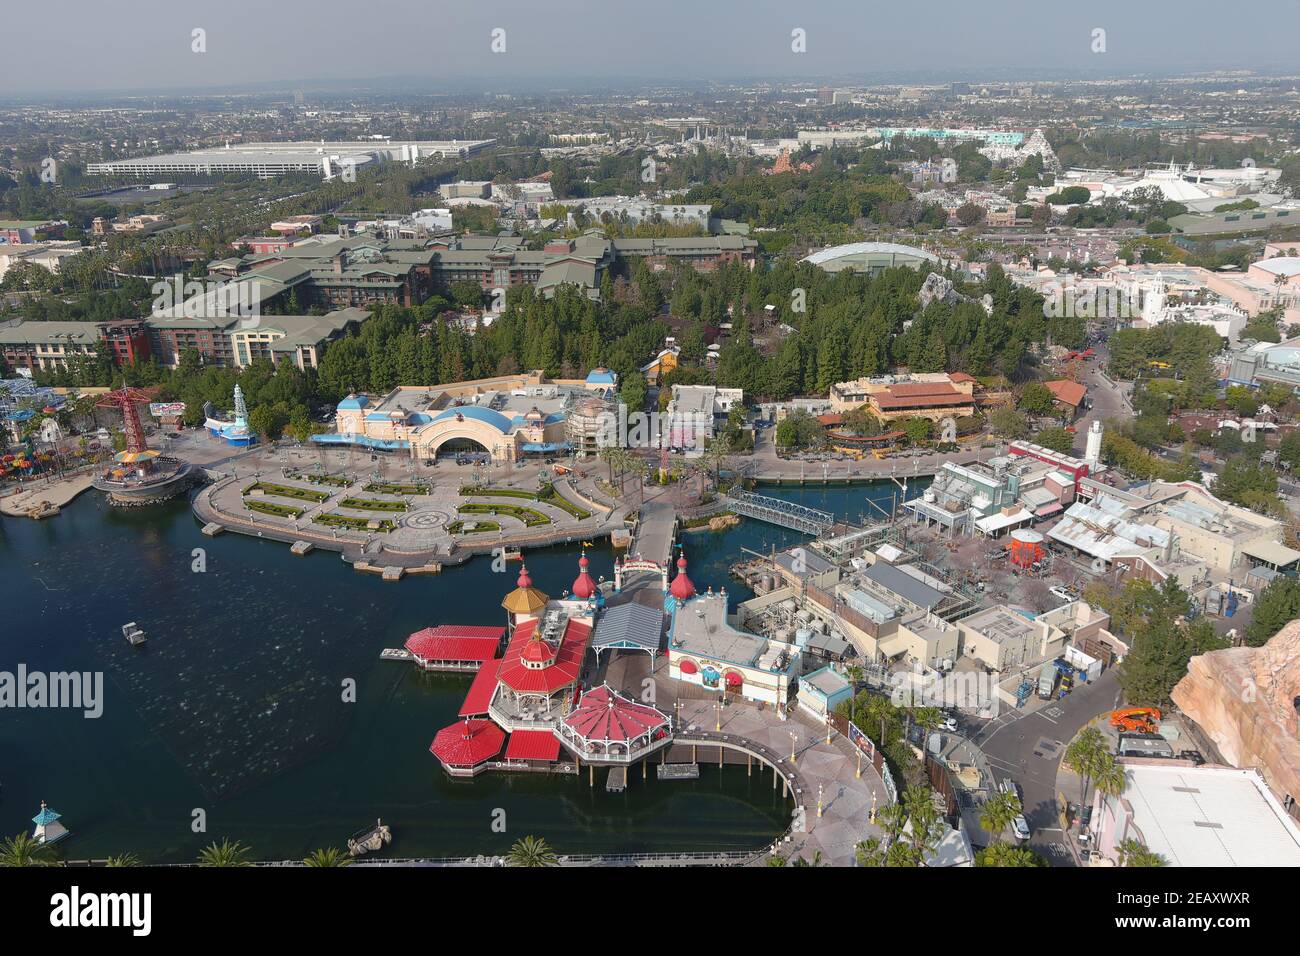 Une vue aérienne de Disney California Adventure et de Disneyland Park, le mercredi 10 février 2021, à Anaheim, Calif. Banque D'Images